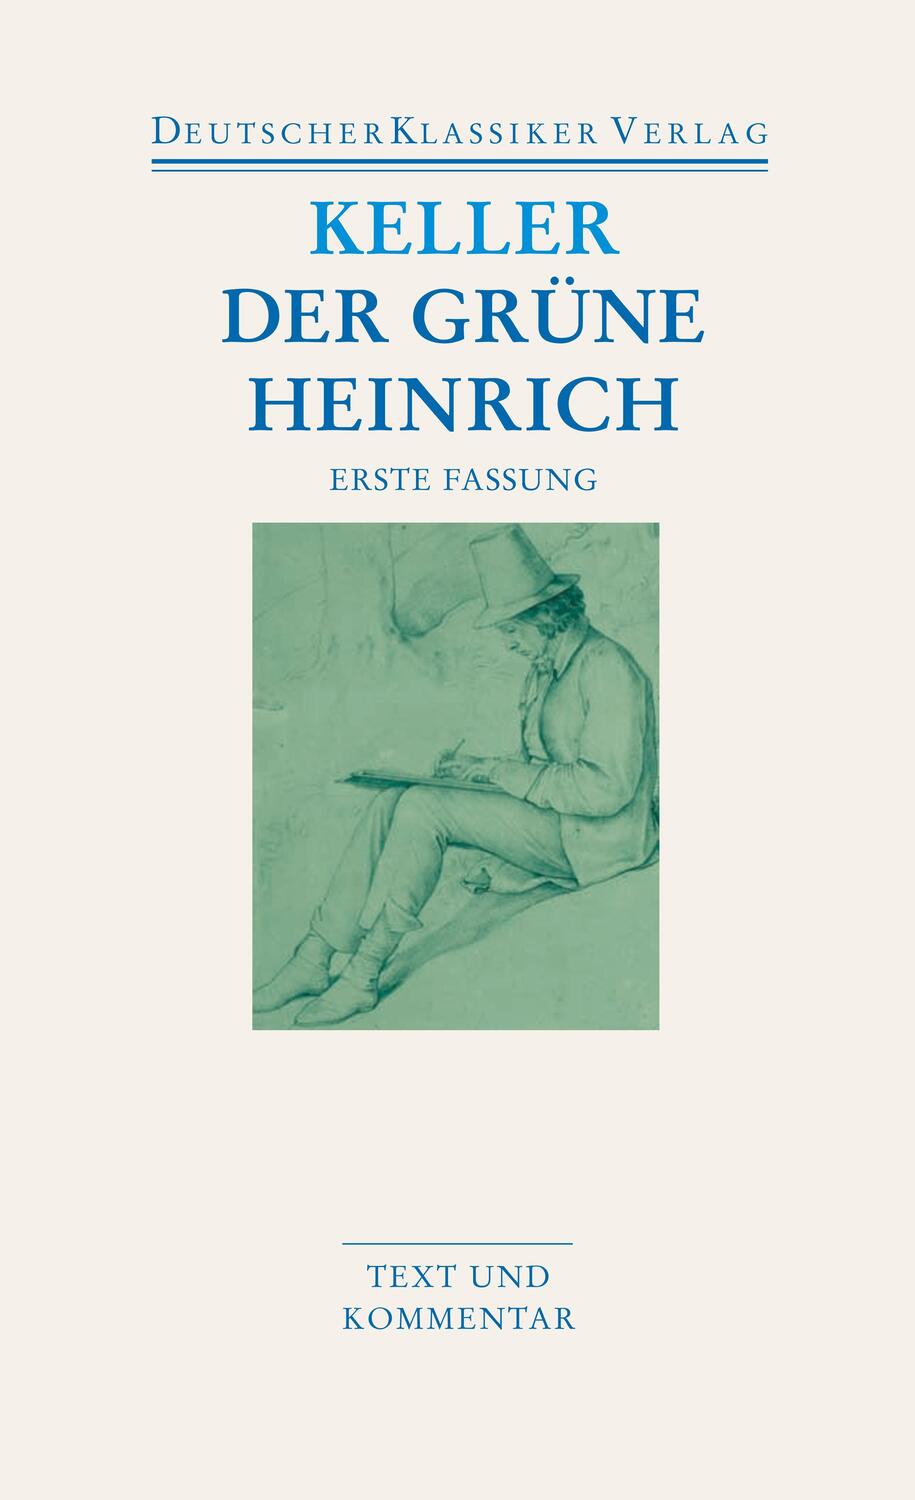 Der grüne Heinrich / Erste Fassung - Keller, Gottfried